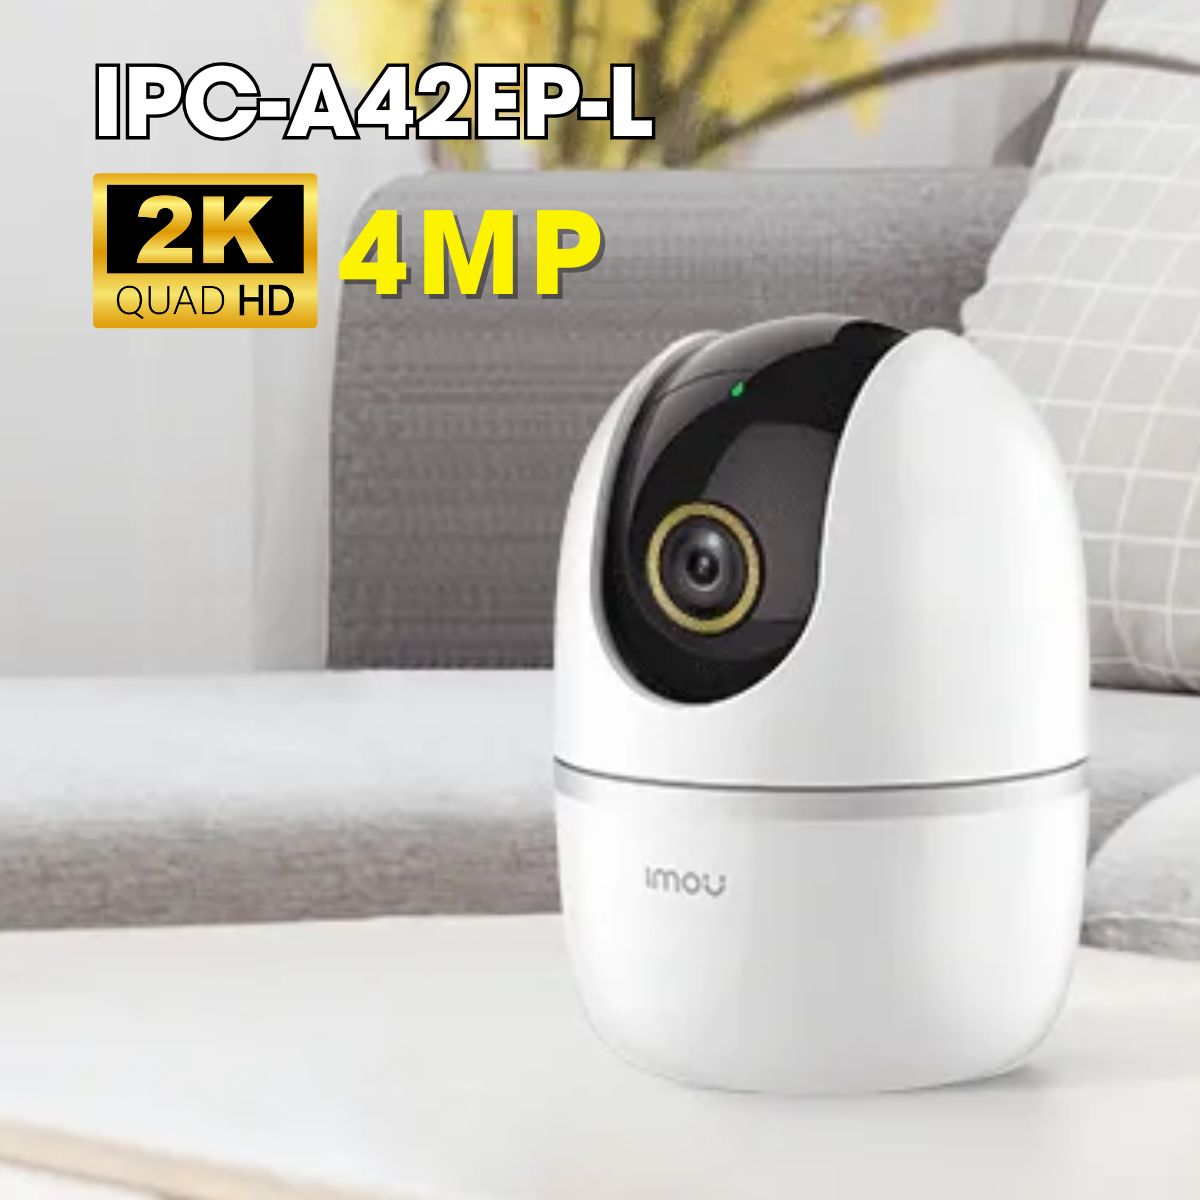 Camera Wifi trong nhà IMOU IPC-A42EP-L 2K 4MP, phát hiện chuyển động, chống ngược sáng DWDR, hồng ngoại 10m, đàm thoại 2 chiều